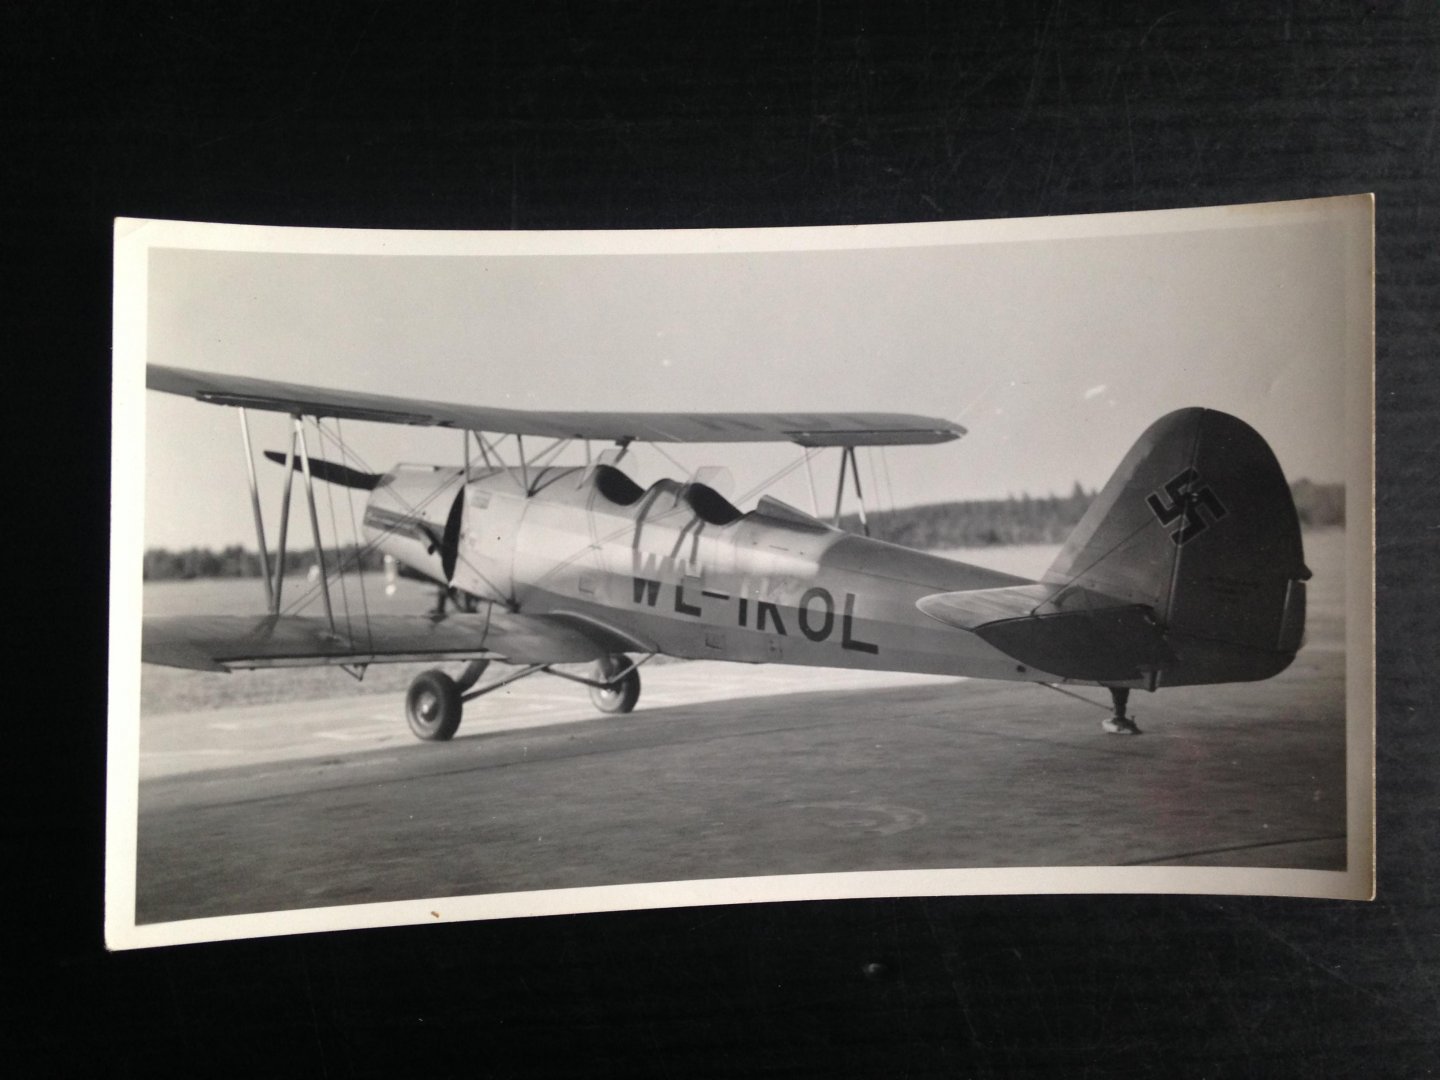  - Authentieke vooroorlogse foto WL-IKOL Arado Ar 66